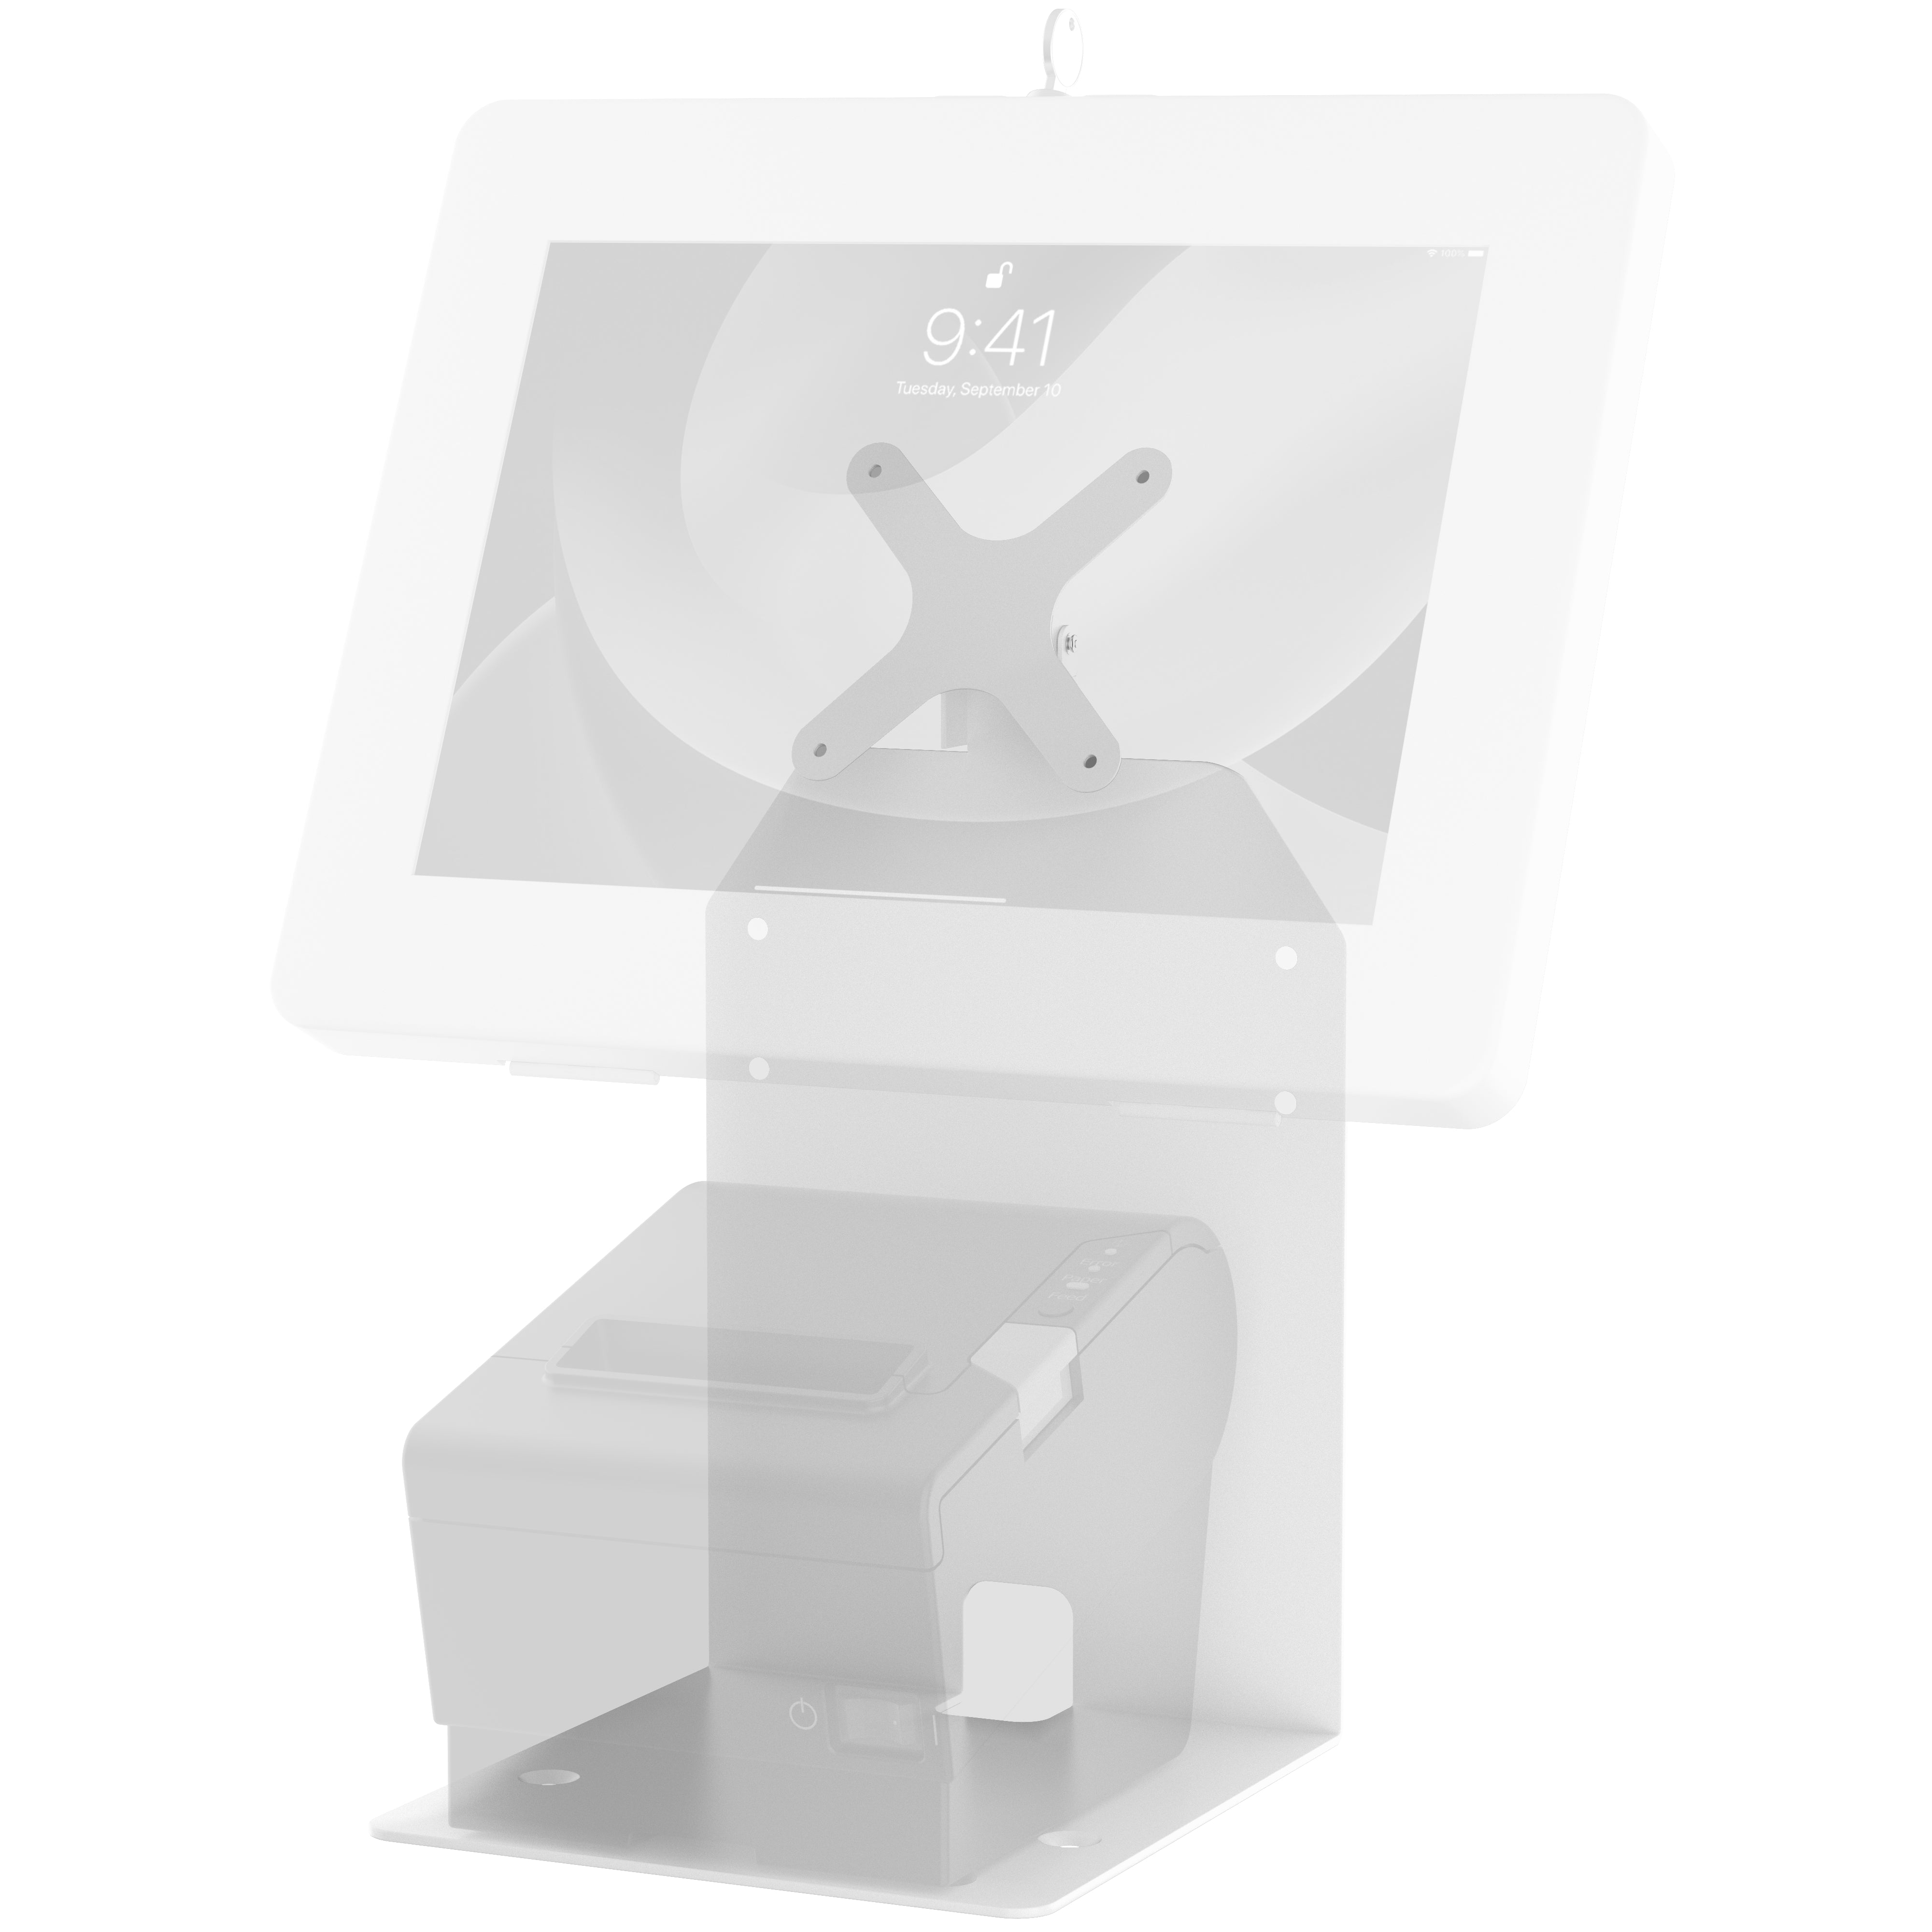 Single VESA Plate POS Station with Printer Stand, Magnetic Scanner & Card Reader Holder